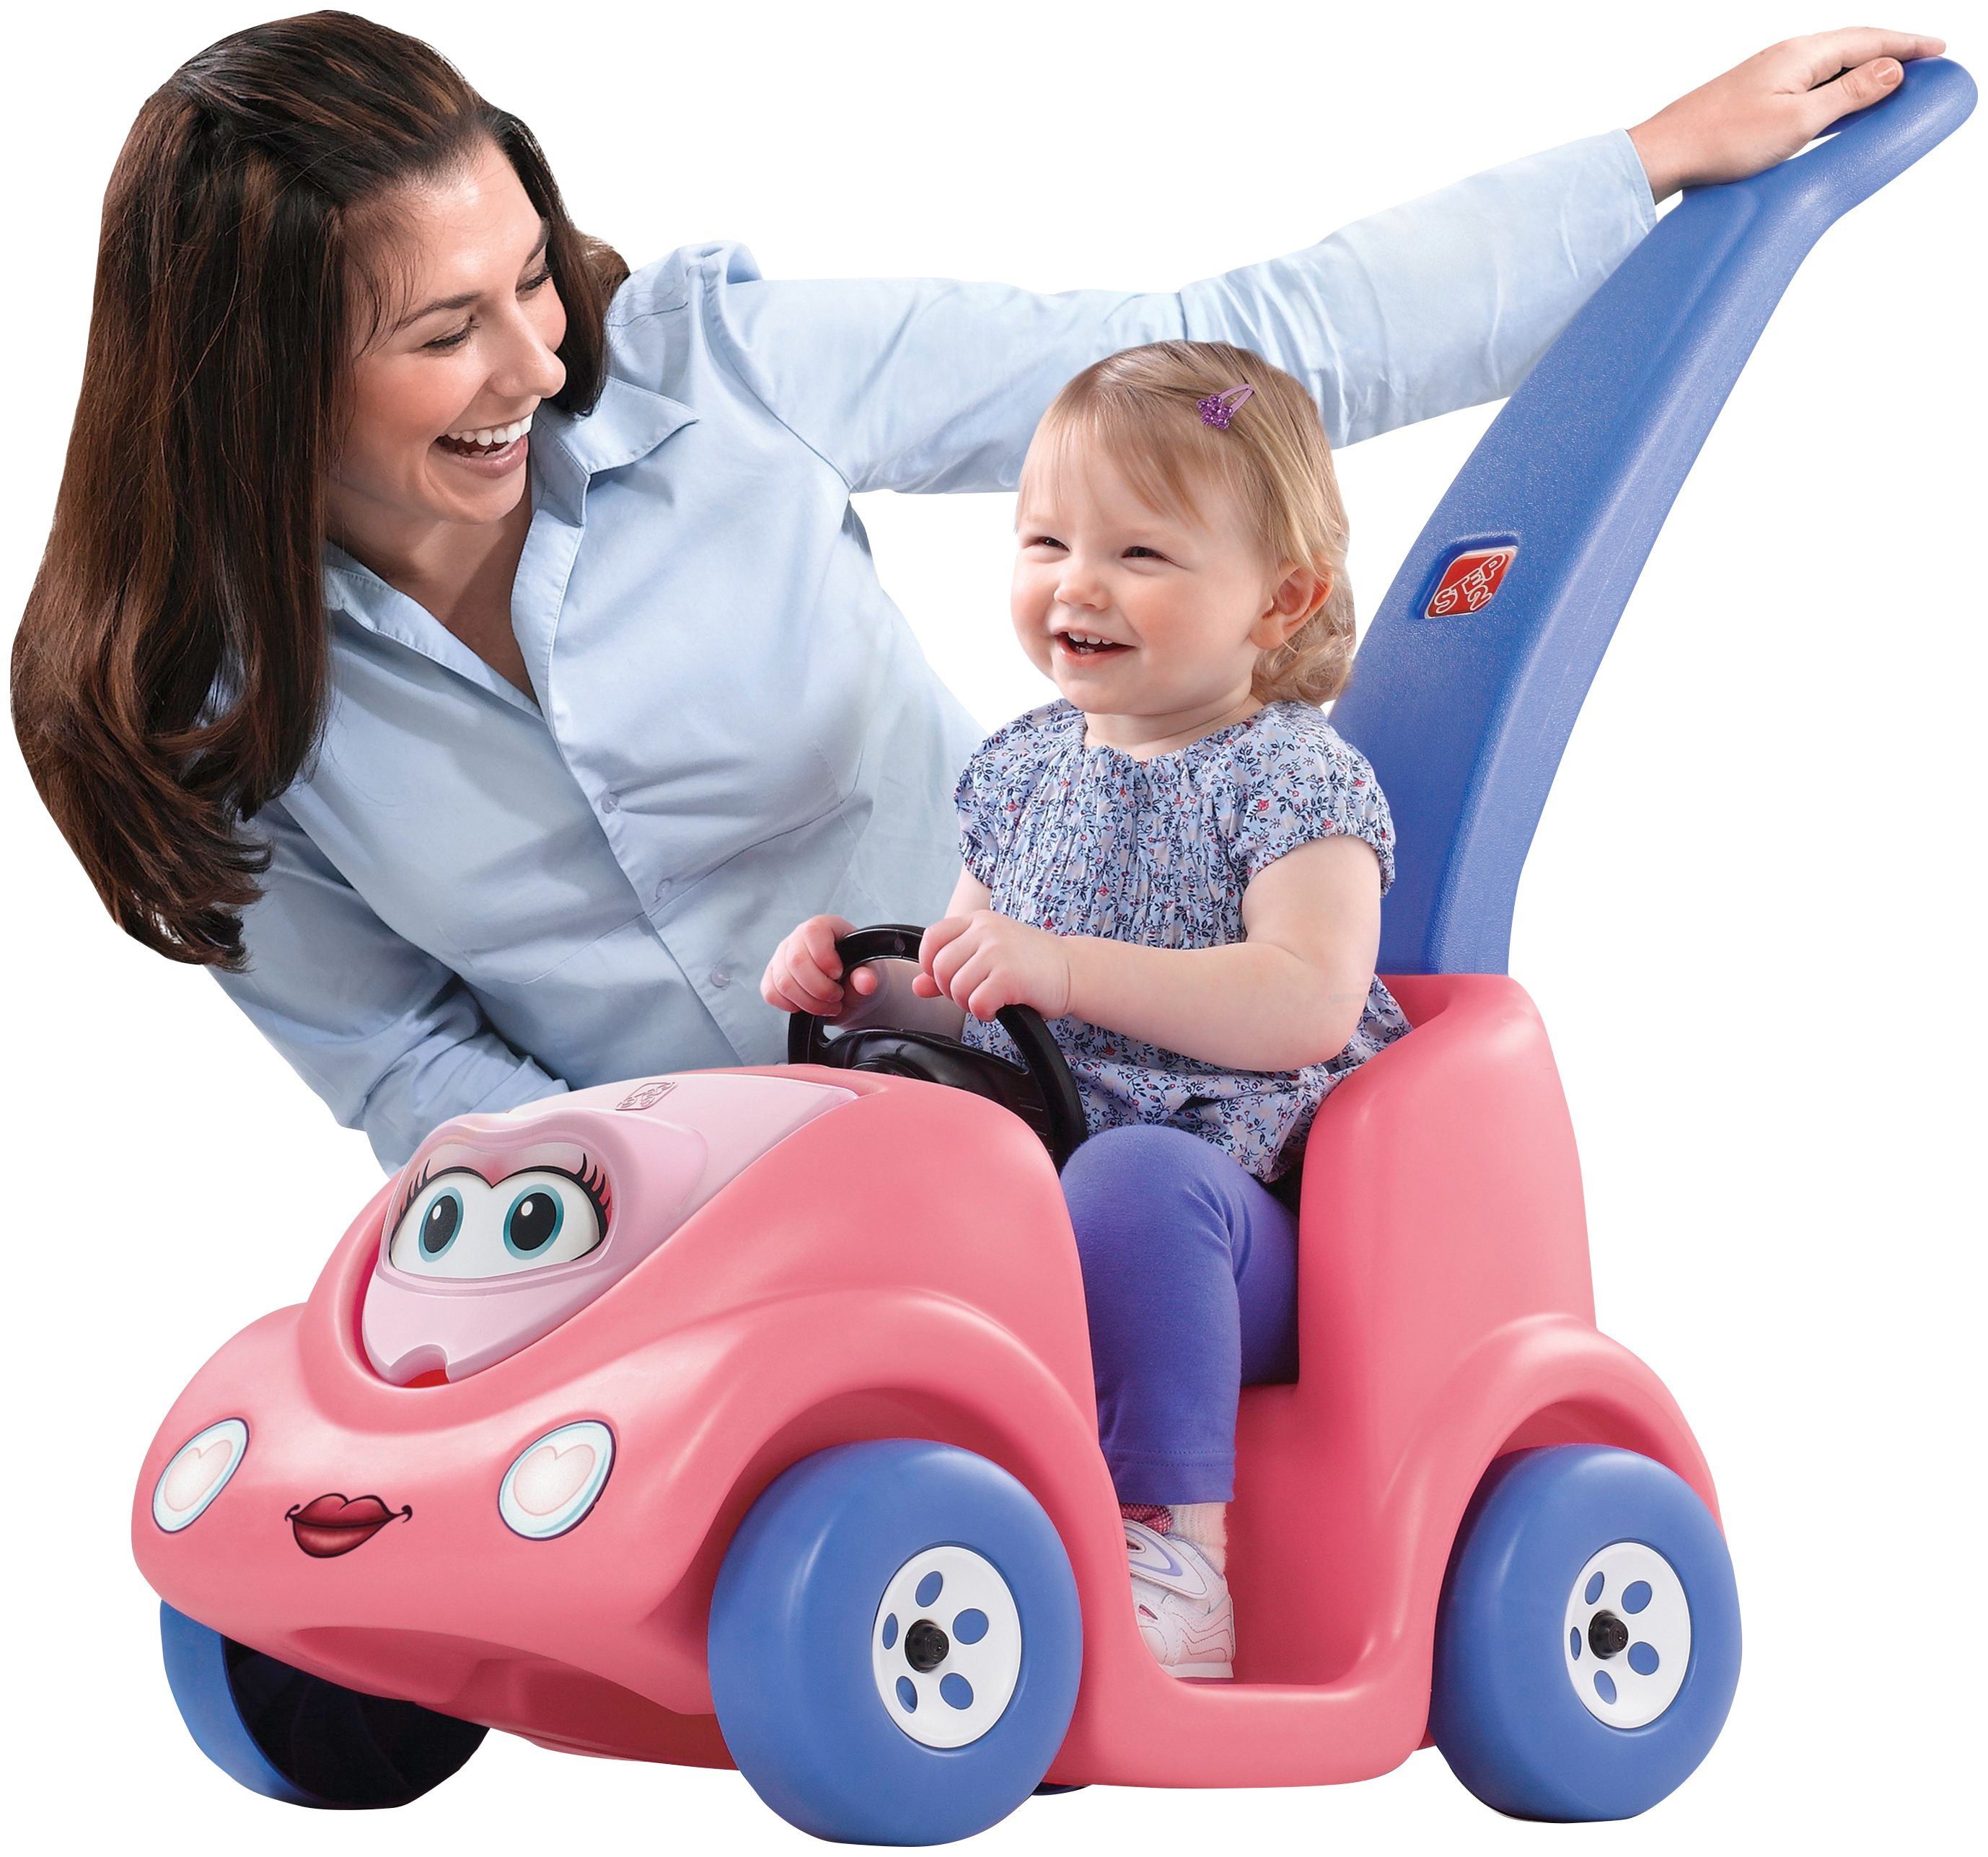 Spielzeug Bobby-Car & Rutscher Step2 Rutscherauto Anniversary Edition Buggy, für Kinder von 1,5-3 Jahre